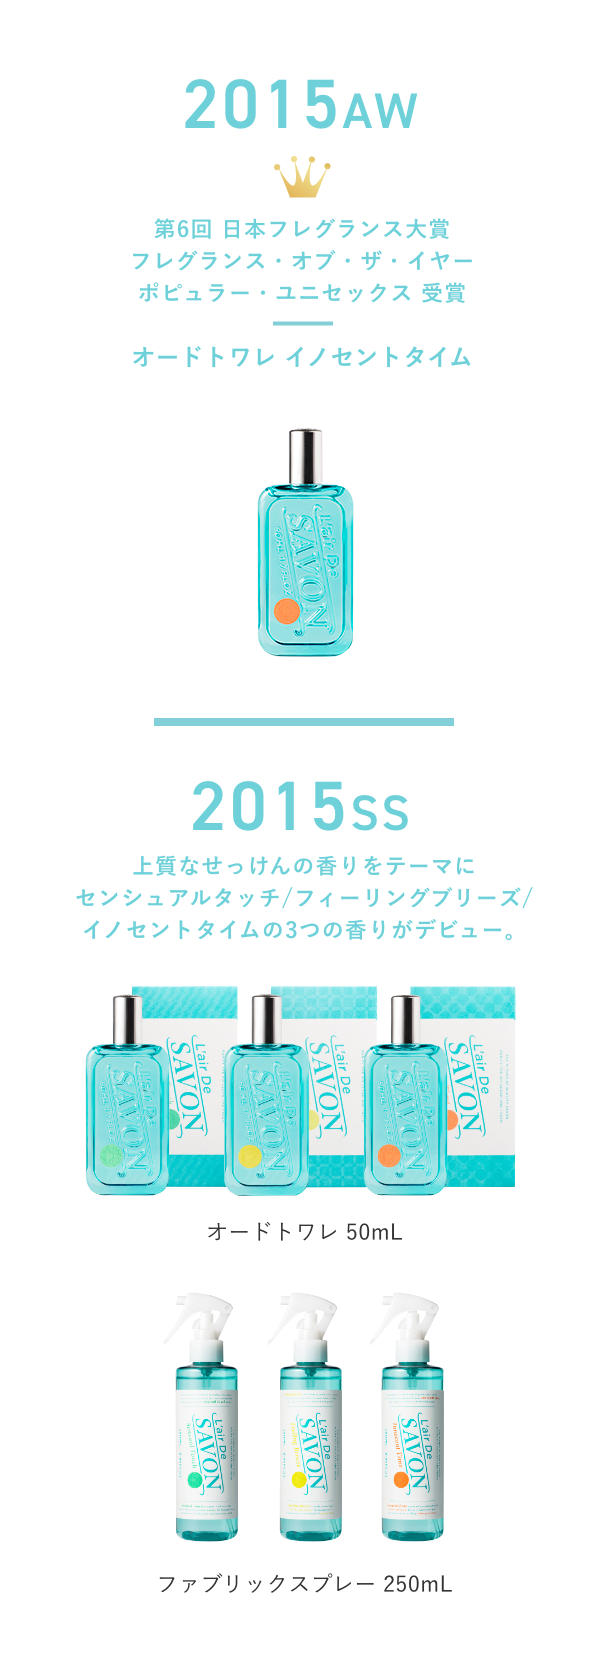 2015SS 上質なせっけんの香りをテーマにセンシュアルタッチ/フィーリングブリーズ/イノセントタイムの3つの香りがデビュー。